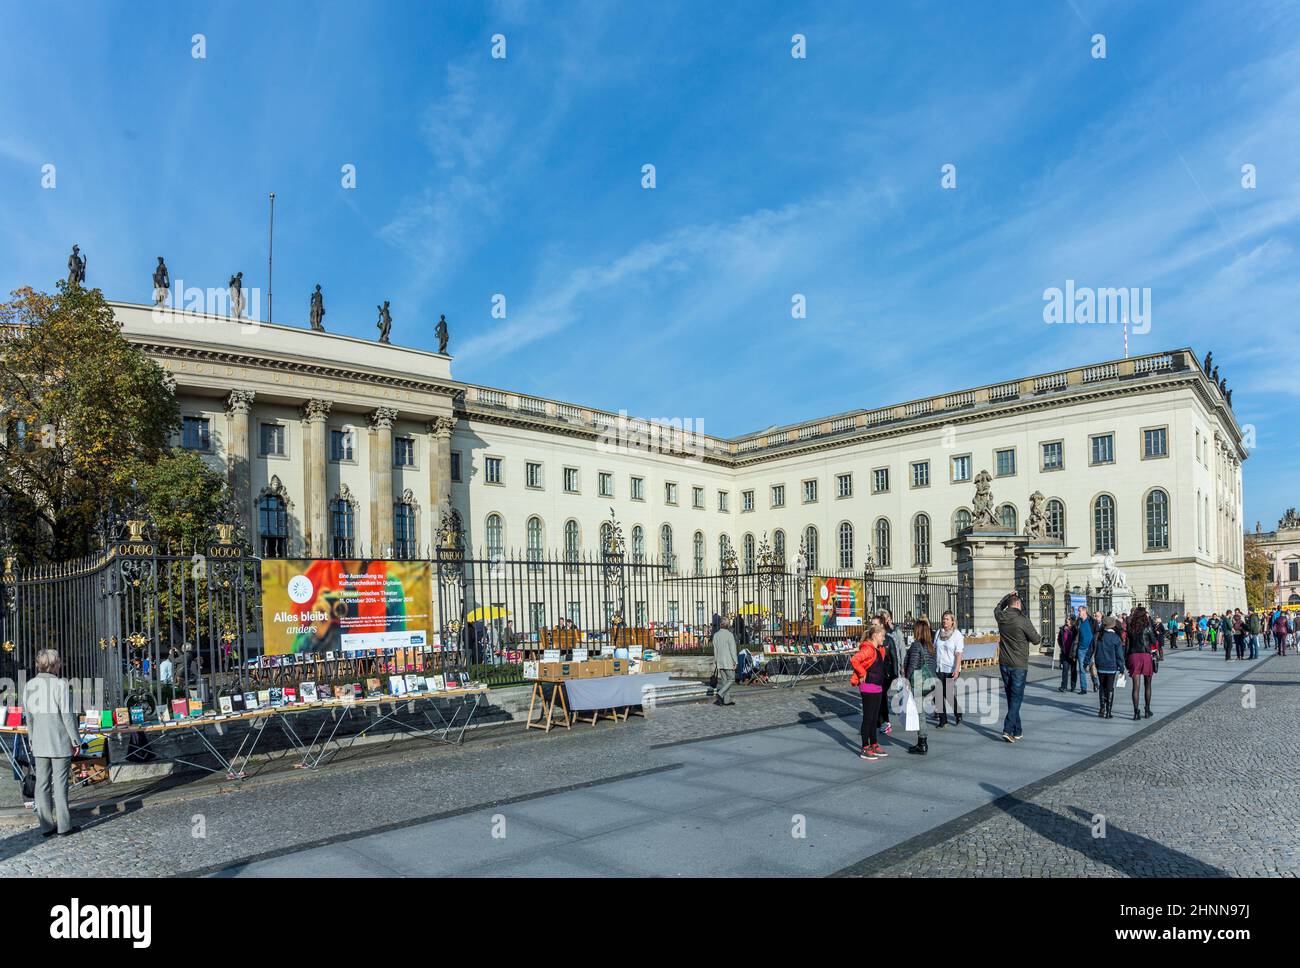 View of Humboldt University of Berlin. Humboldt University is one of Berlin oldest universities, founded in 1810. Stock Photo